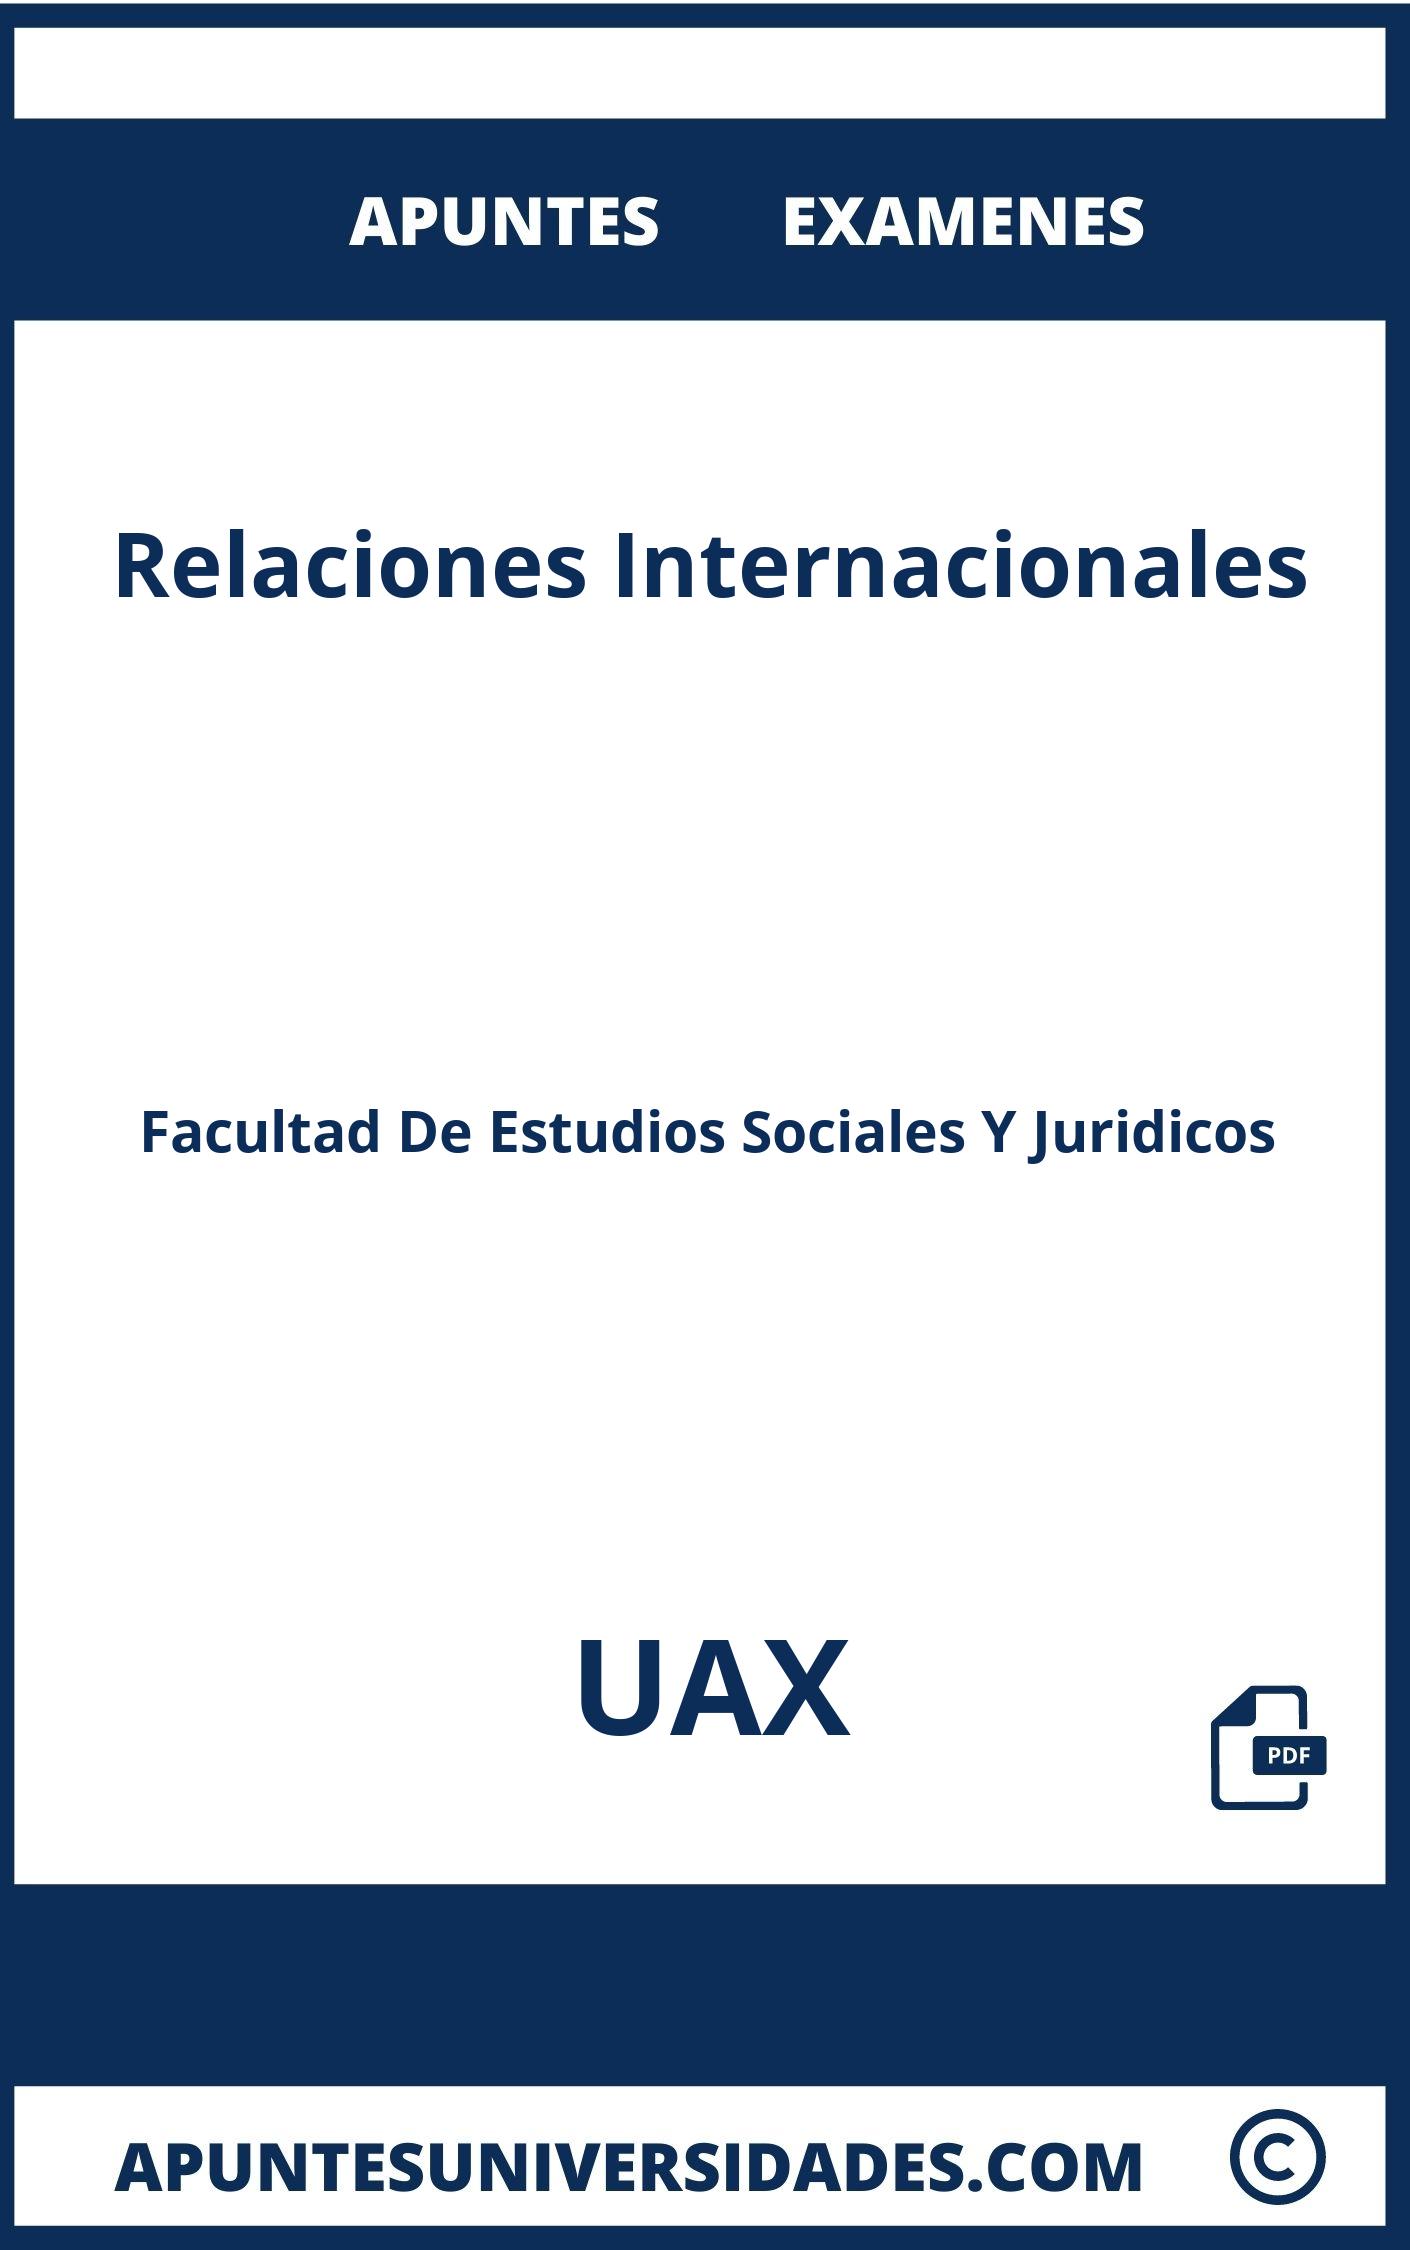 Examenes y Apuntes Relaciones Internacionales UAX